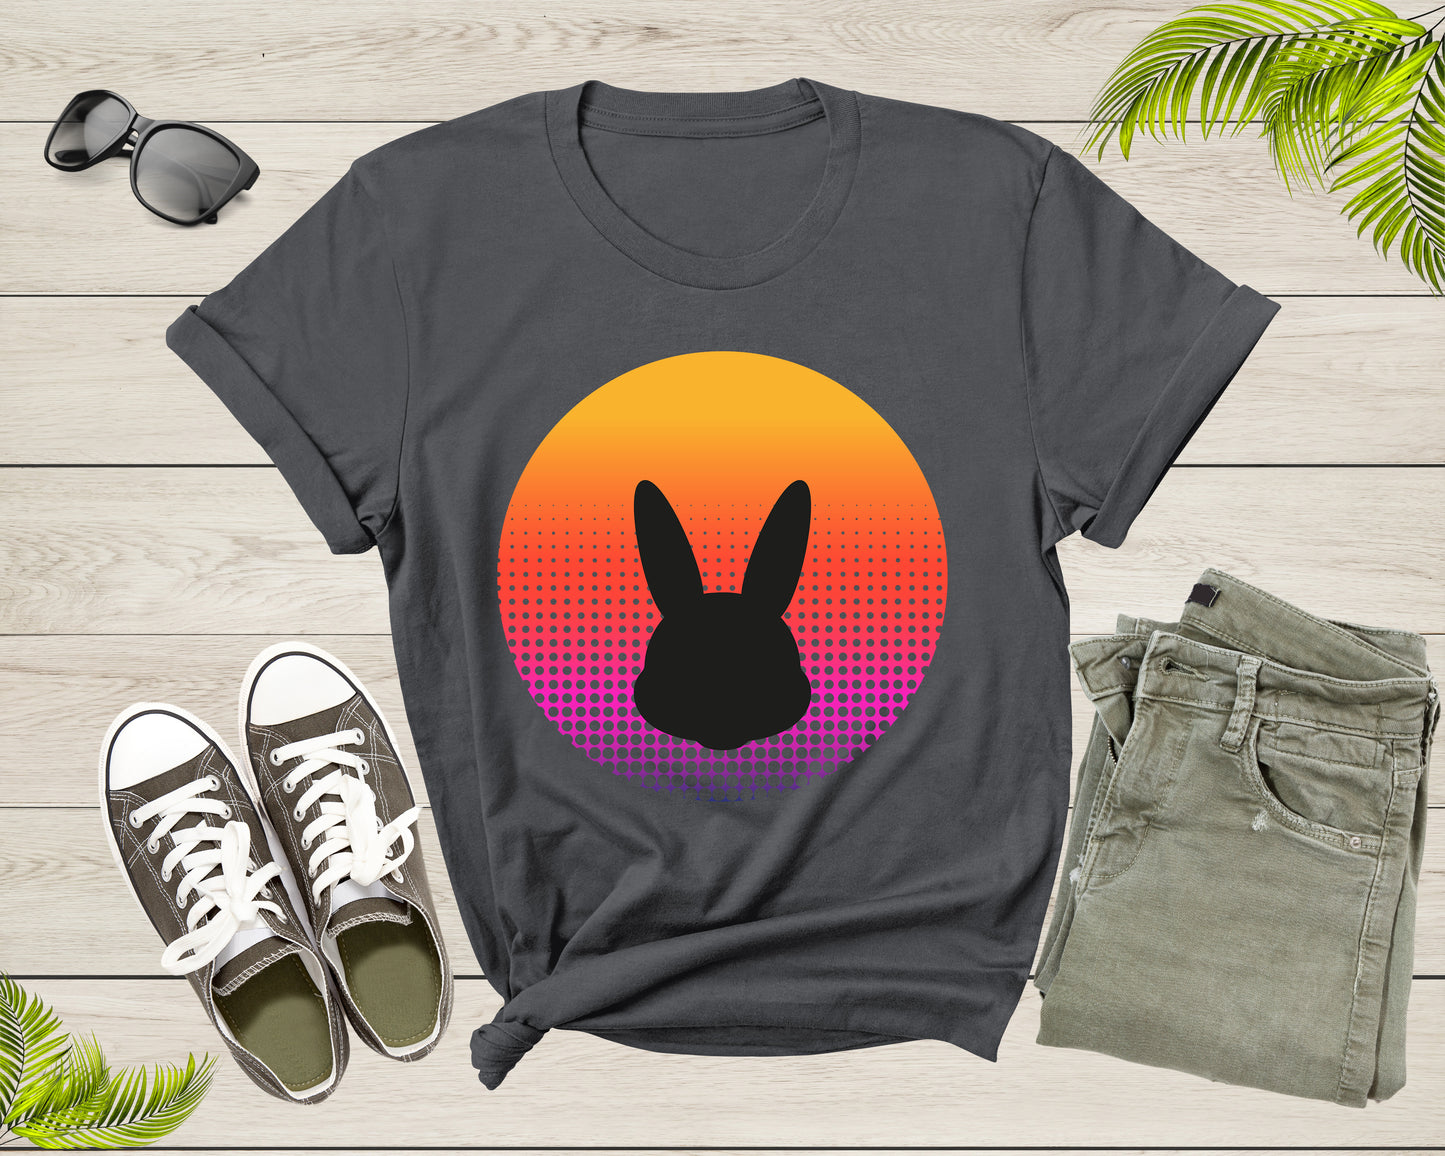 Cute Bunny Rabbit Animal Silhouette at Sunset for Men Women T-Shirt Bunny Lover Gift T Shirt for Men Women Kids Boys Girls Graphic TShirt